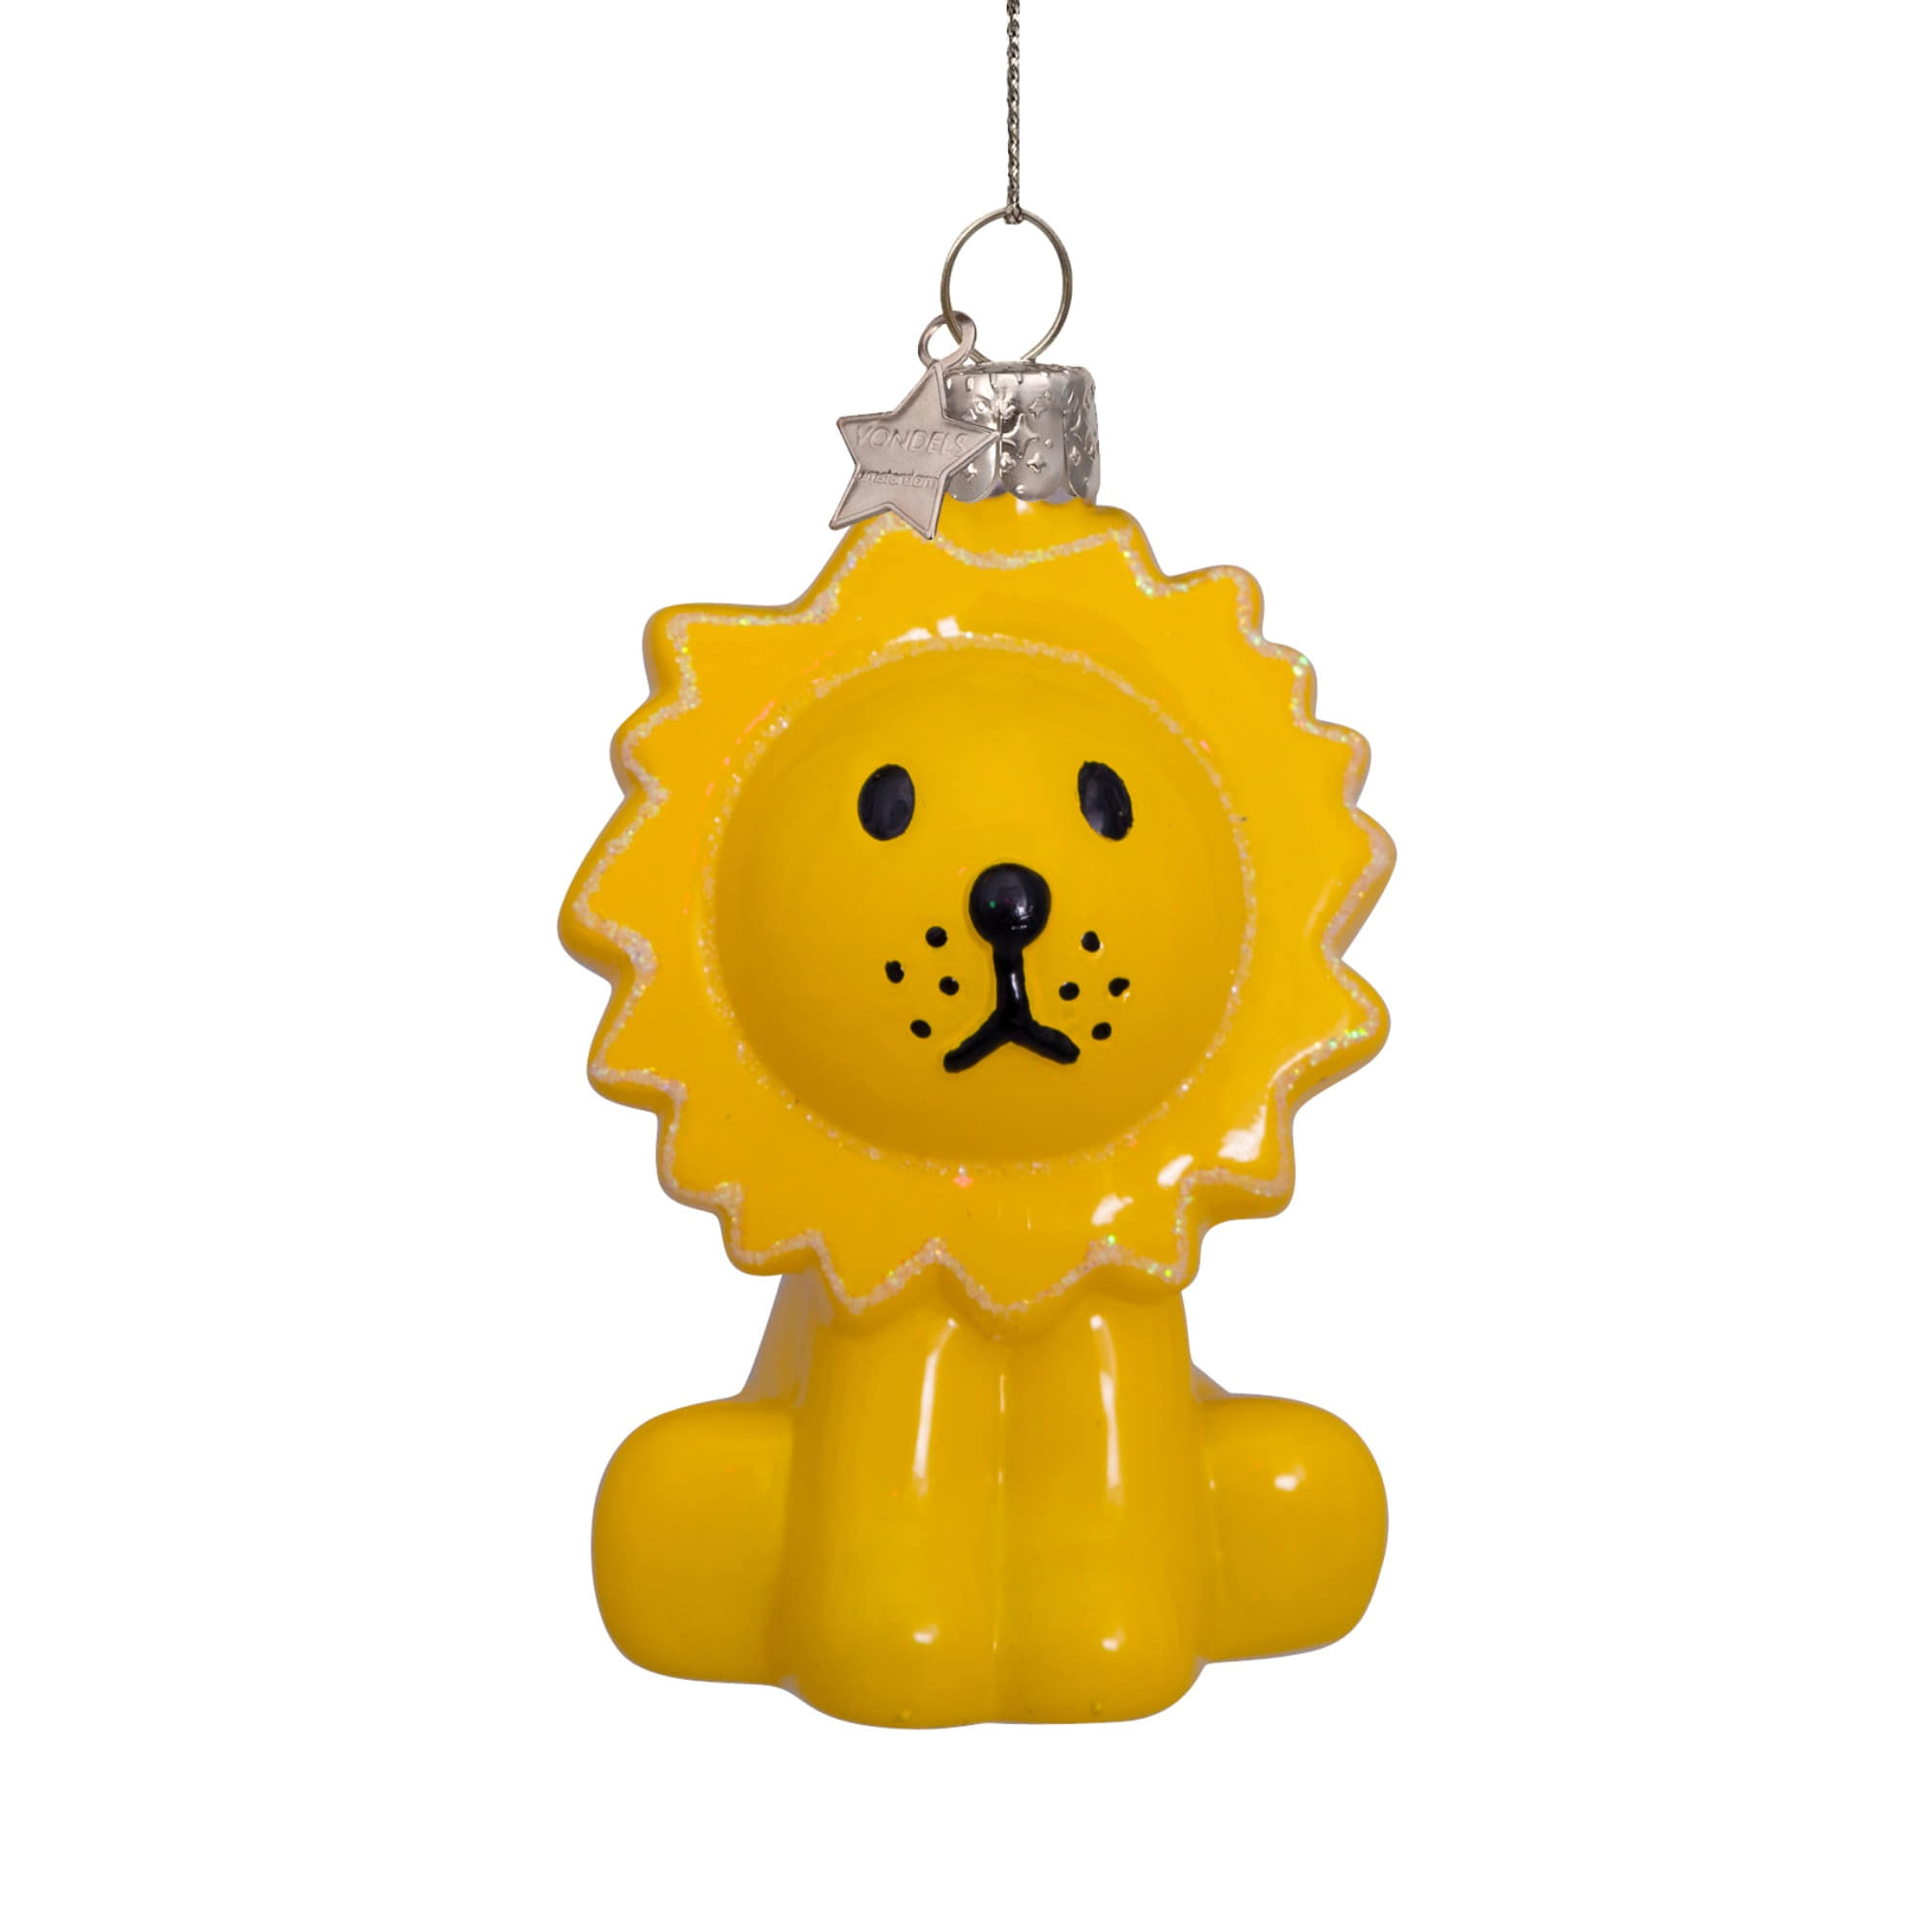 VONDELS Ornament Glass Nijntje Miffy Lion